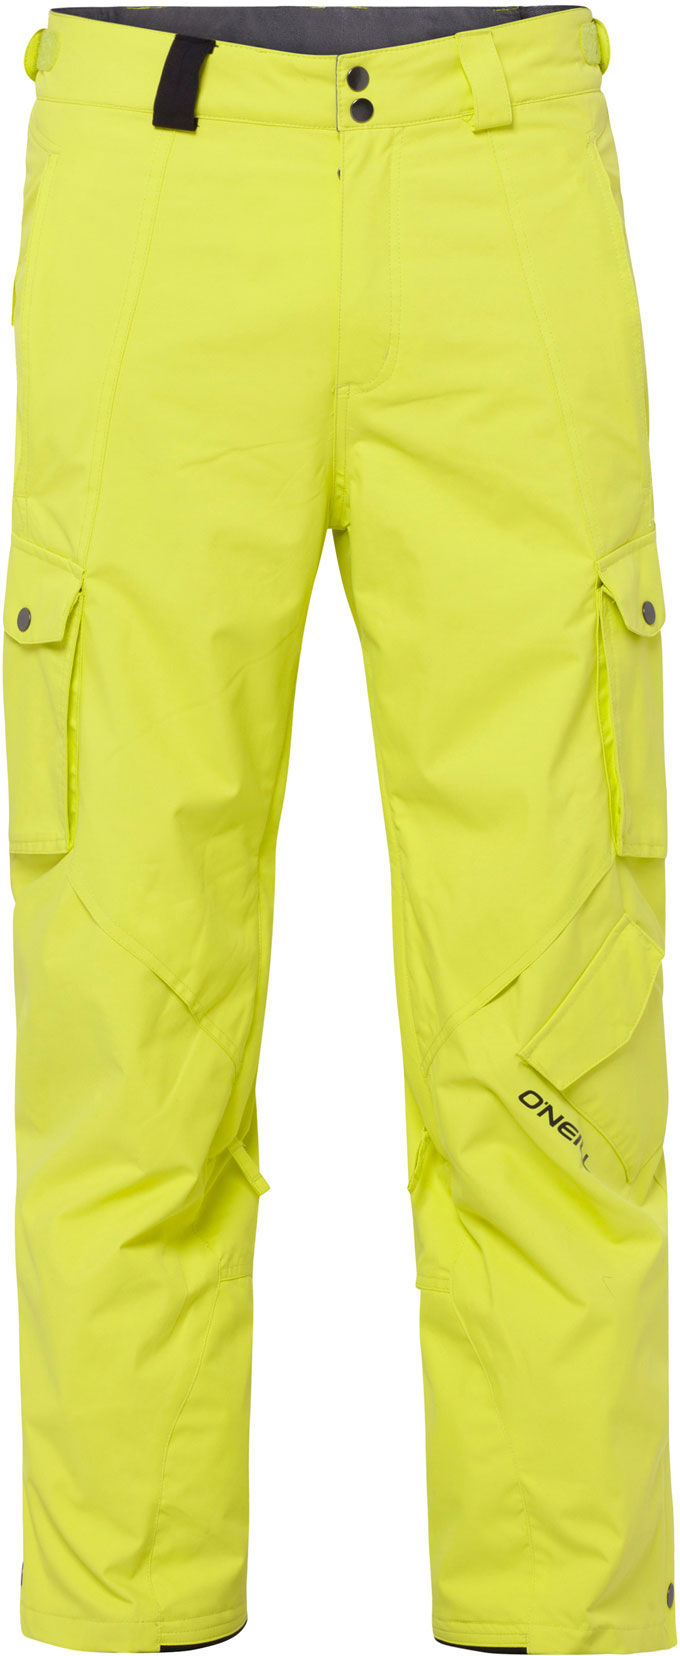 pánské zimní lyžařské kalhoty O'NEILL - YELLOW - XL